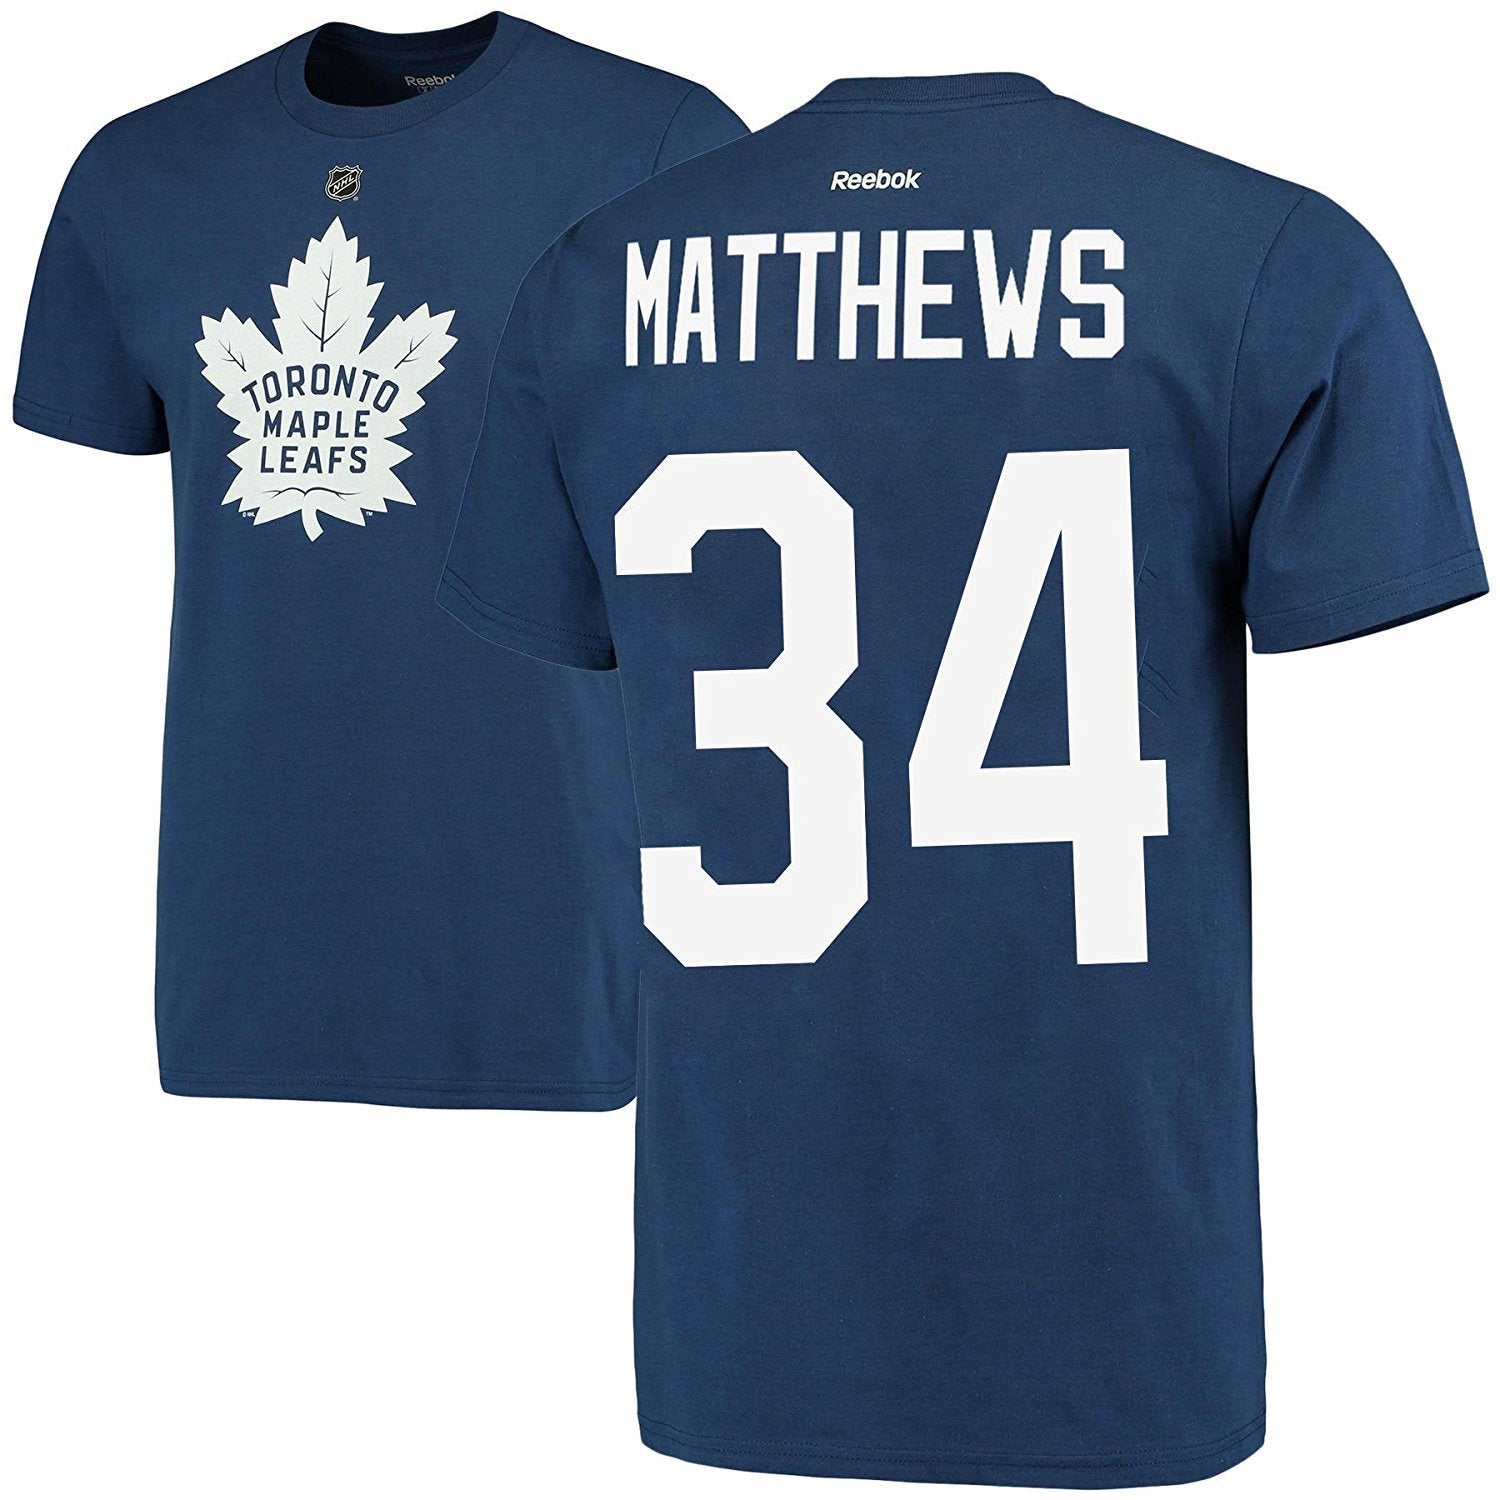 Toronto Maple Leafs Auston Matthews 